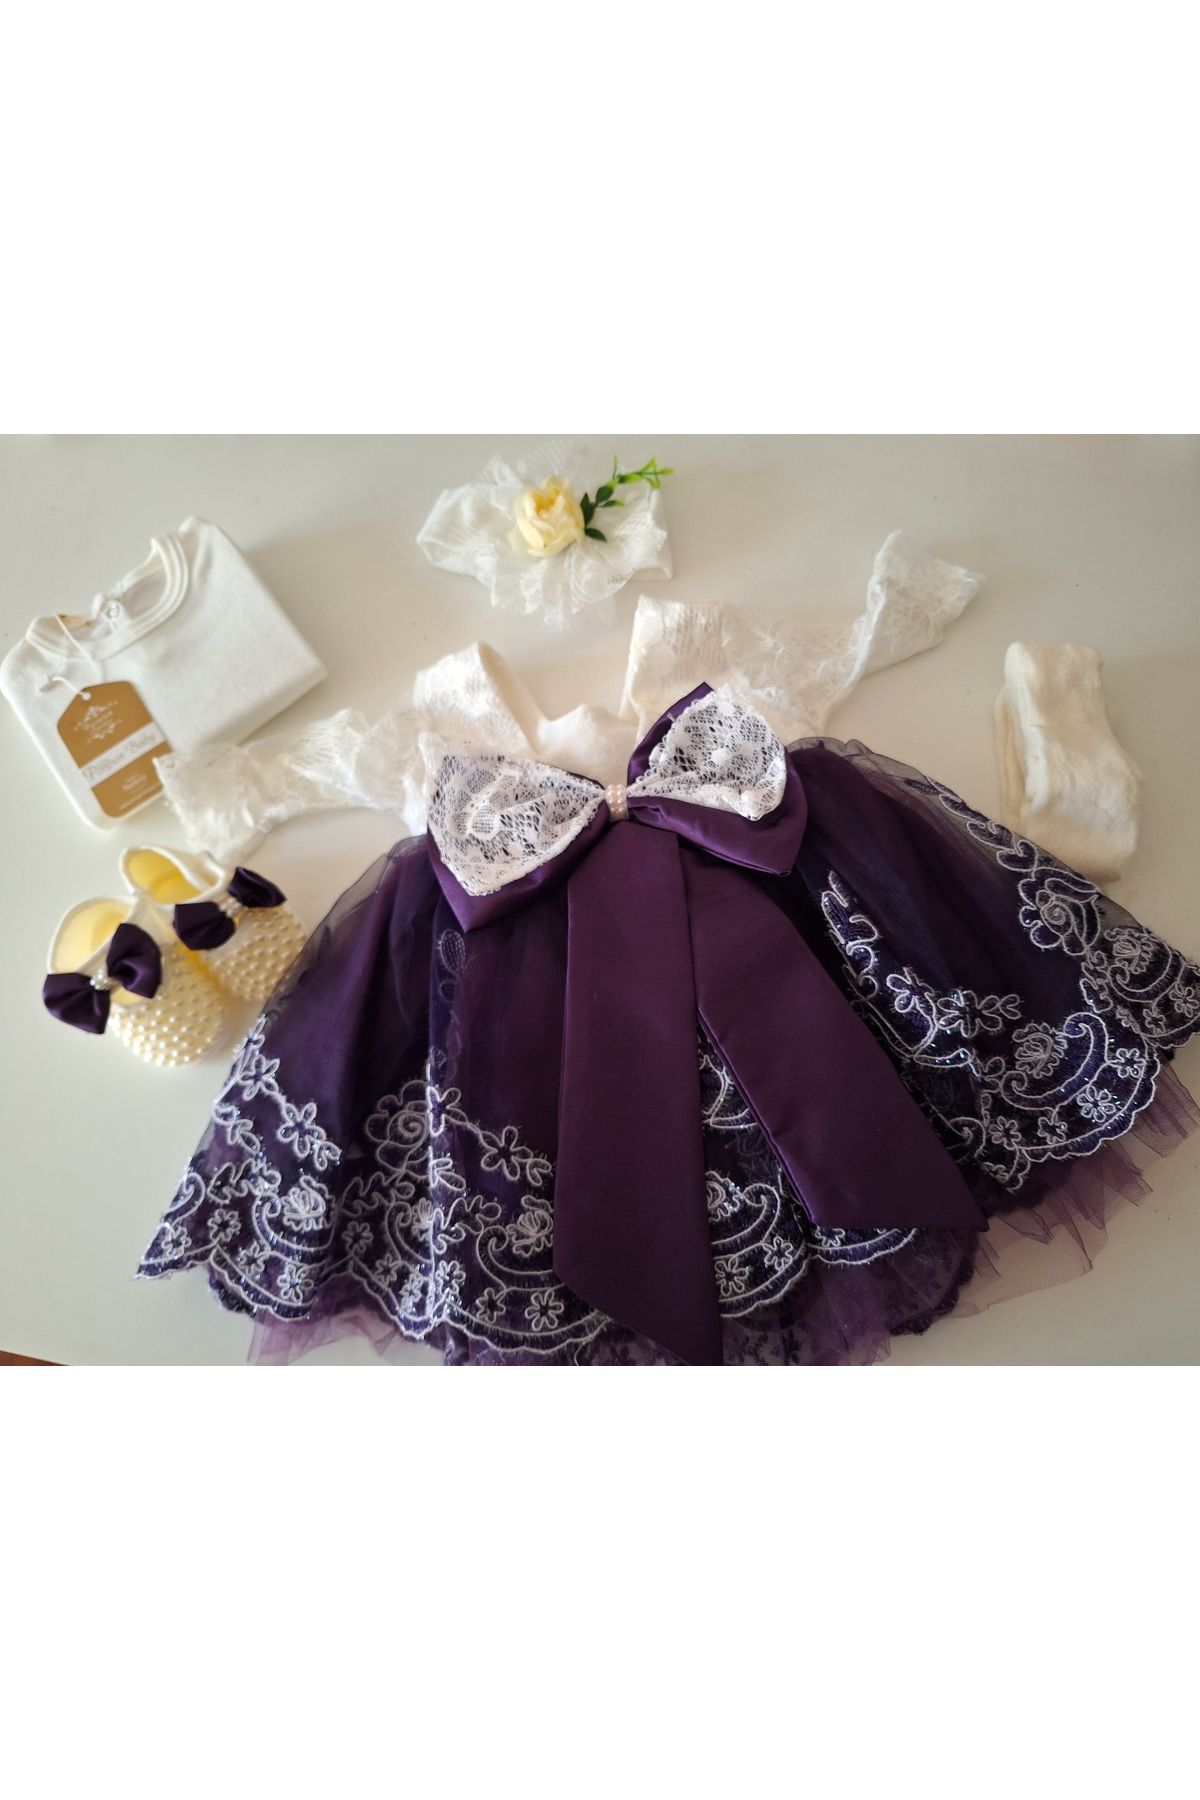 biyan collection Kız Bebek Mevlüt Takımı Gelinlik Abiye Elbise Bebek Doğum Baby Shower Hediyesi